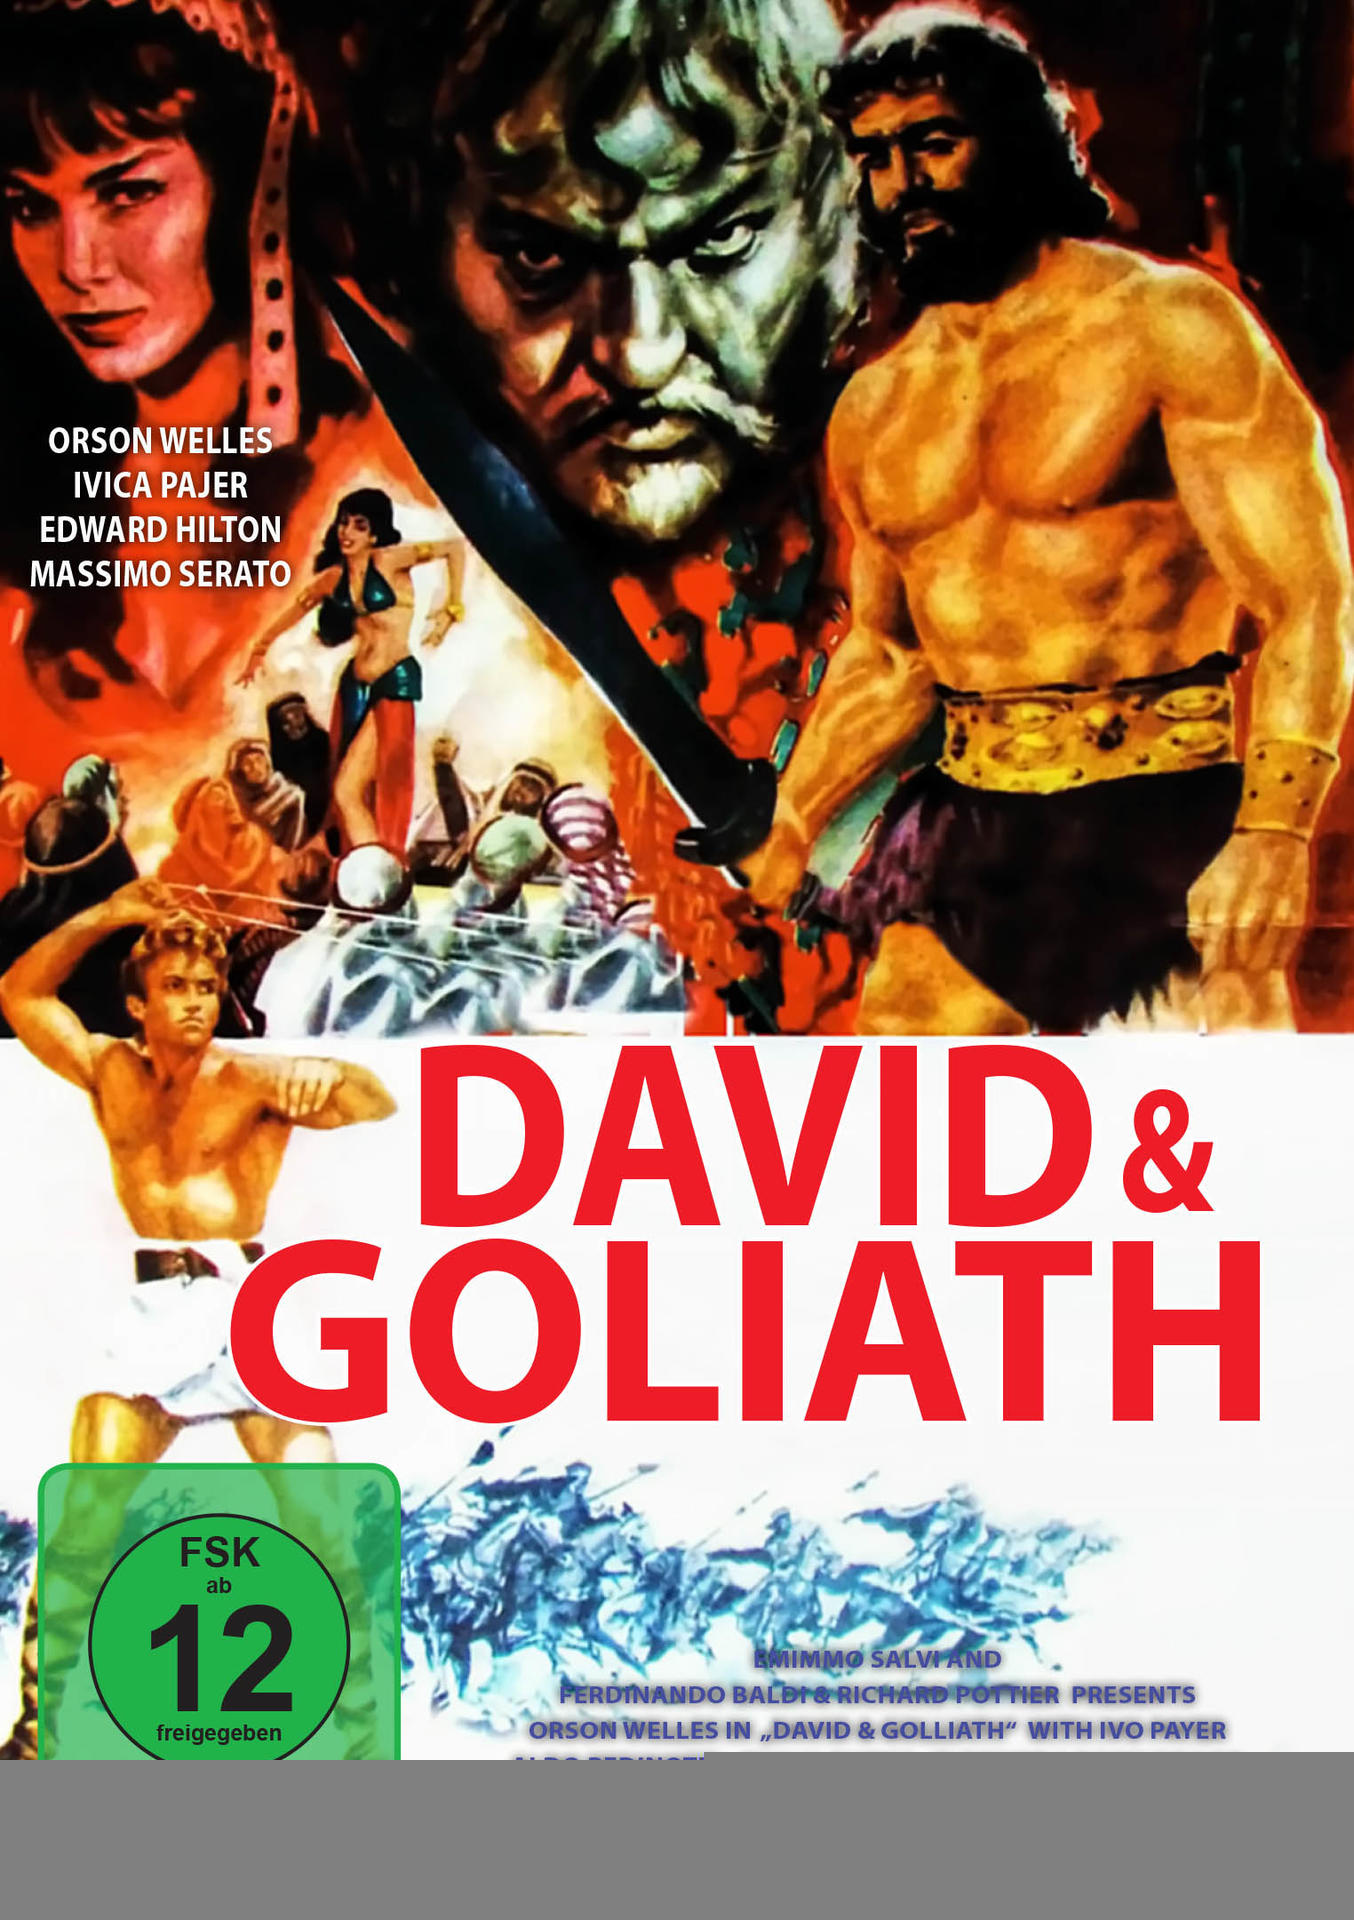 David Goliath DVD und